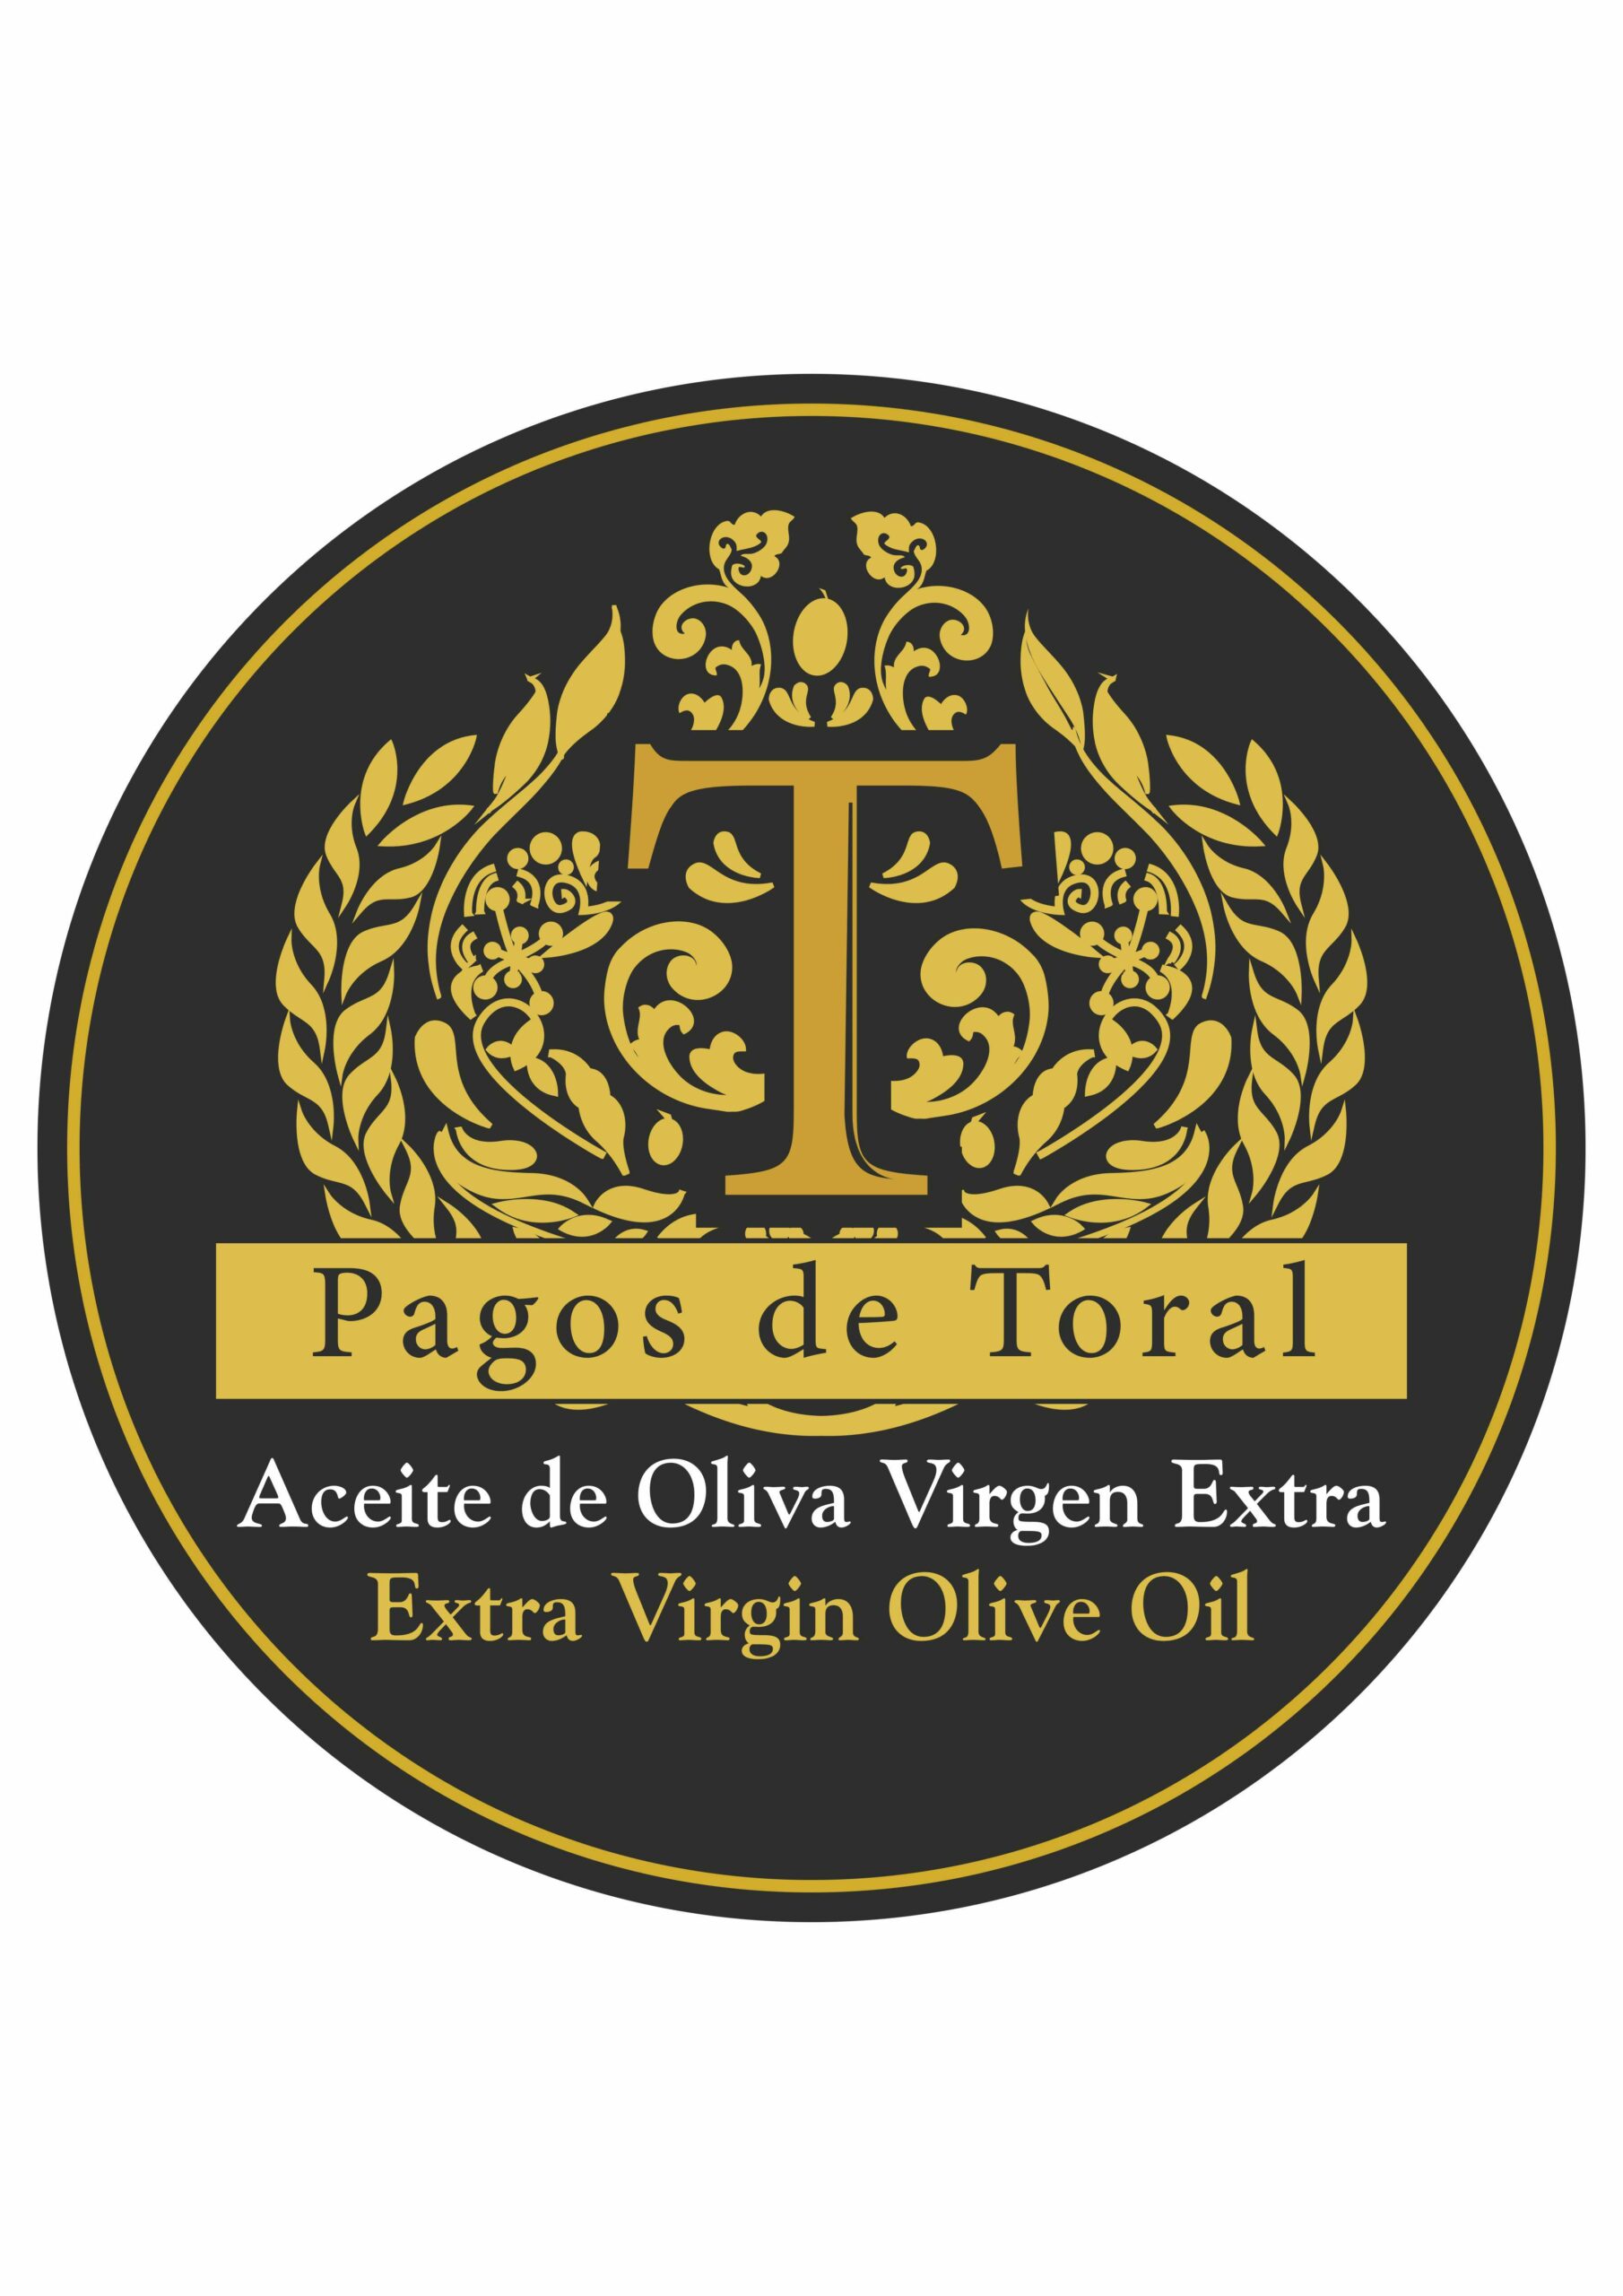 Aceite de Oliva Virgen Extra Familiar - Pagos de Toral, S.C.P. Icon